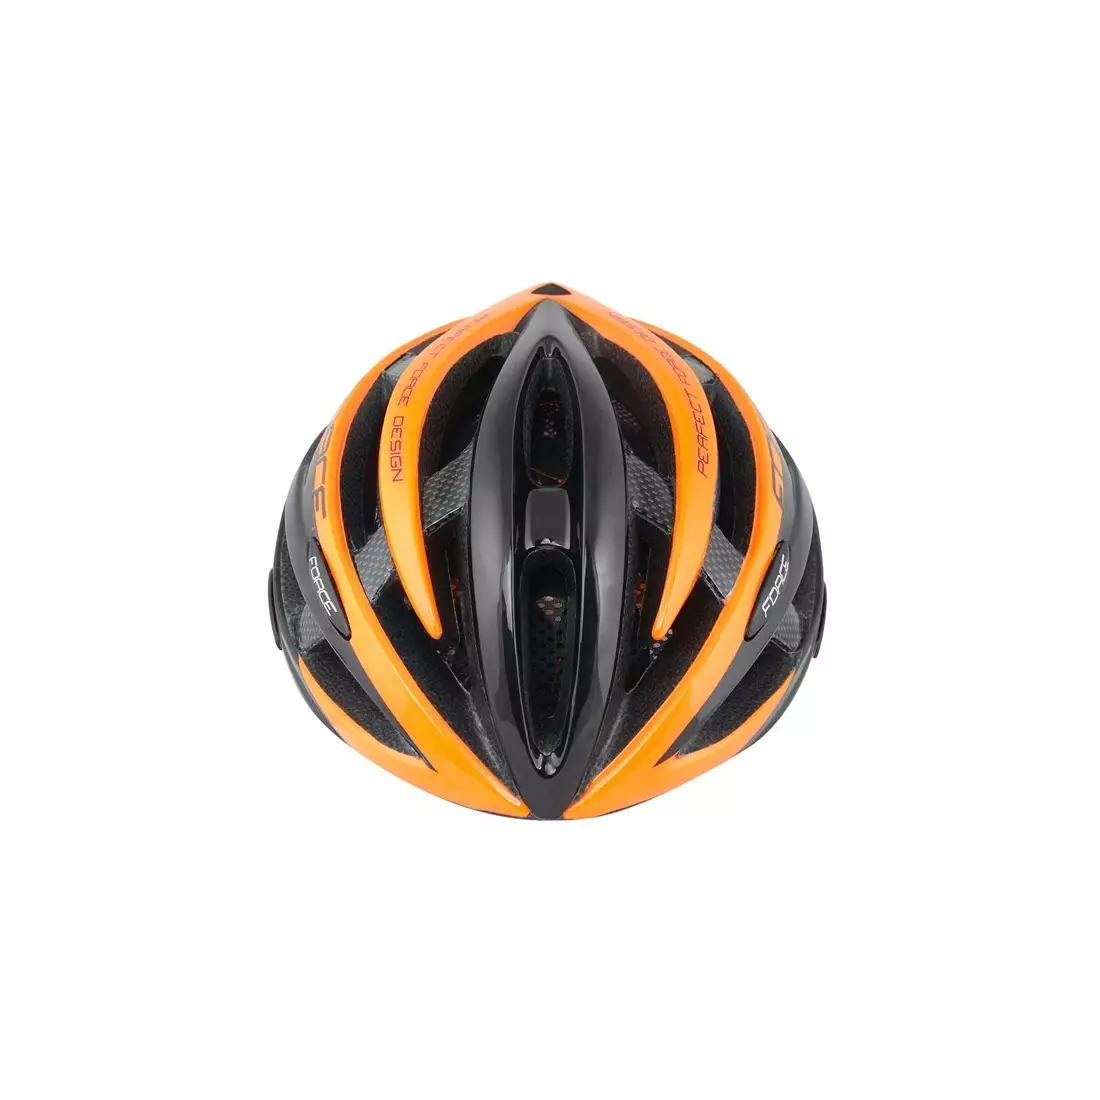 FORCE bicycle helmet, orange 902601(2)